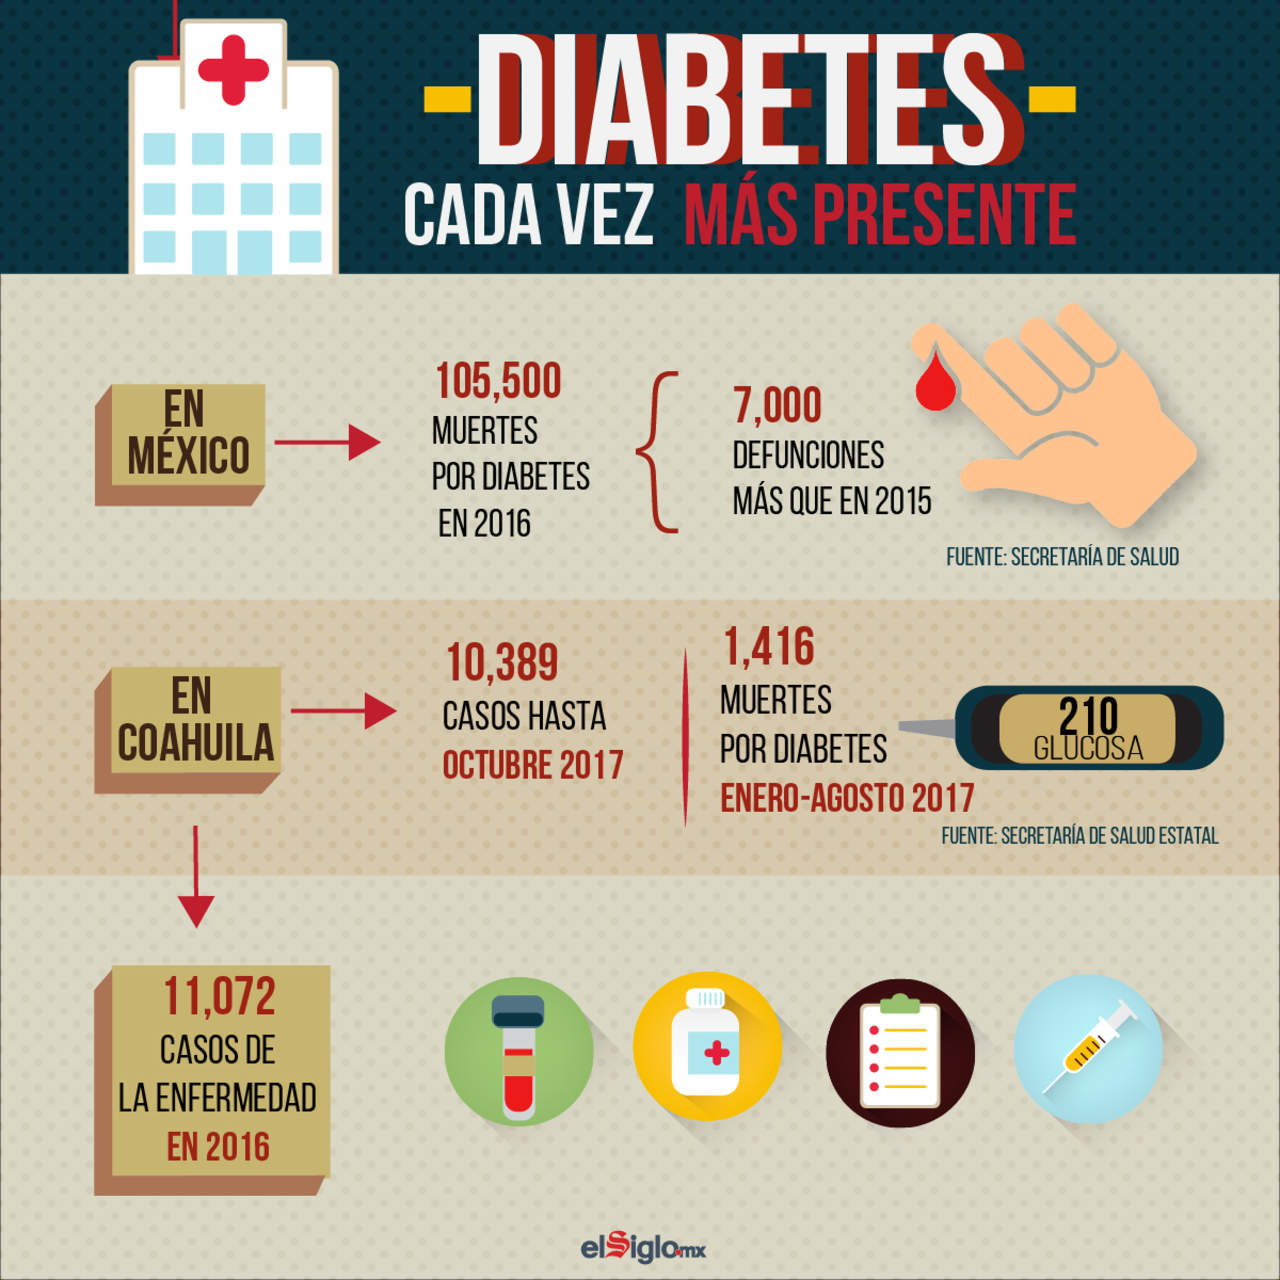 2007: El Día Mundial de la Diabetes se observa por primera vez de forma oficial